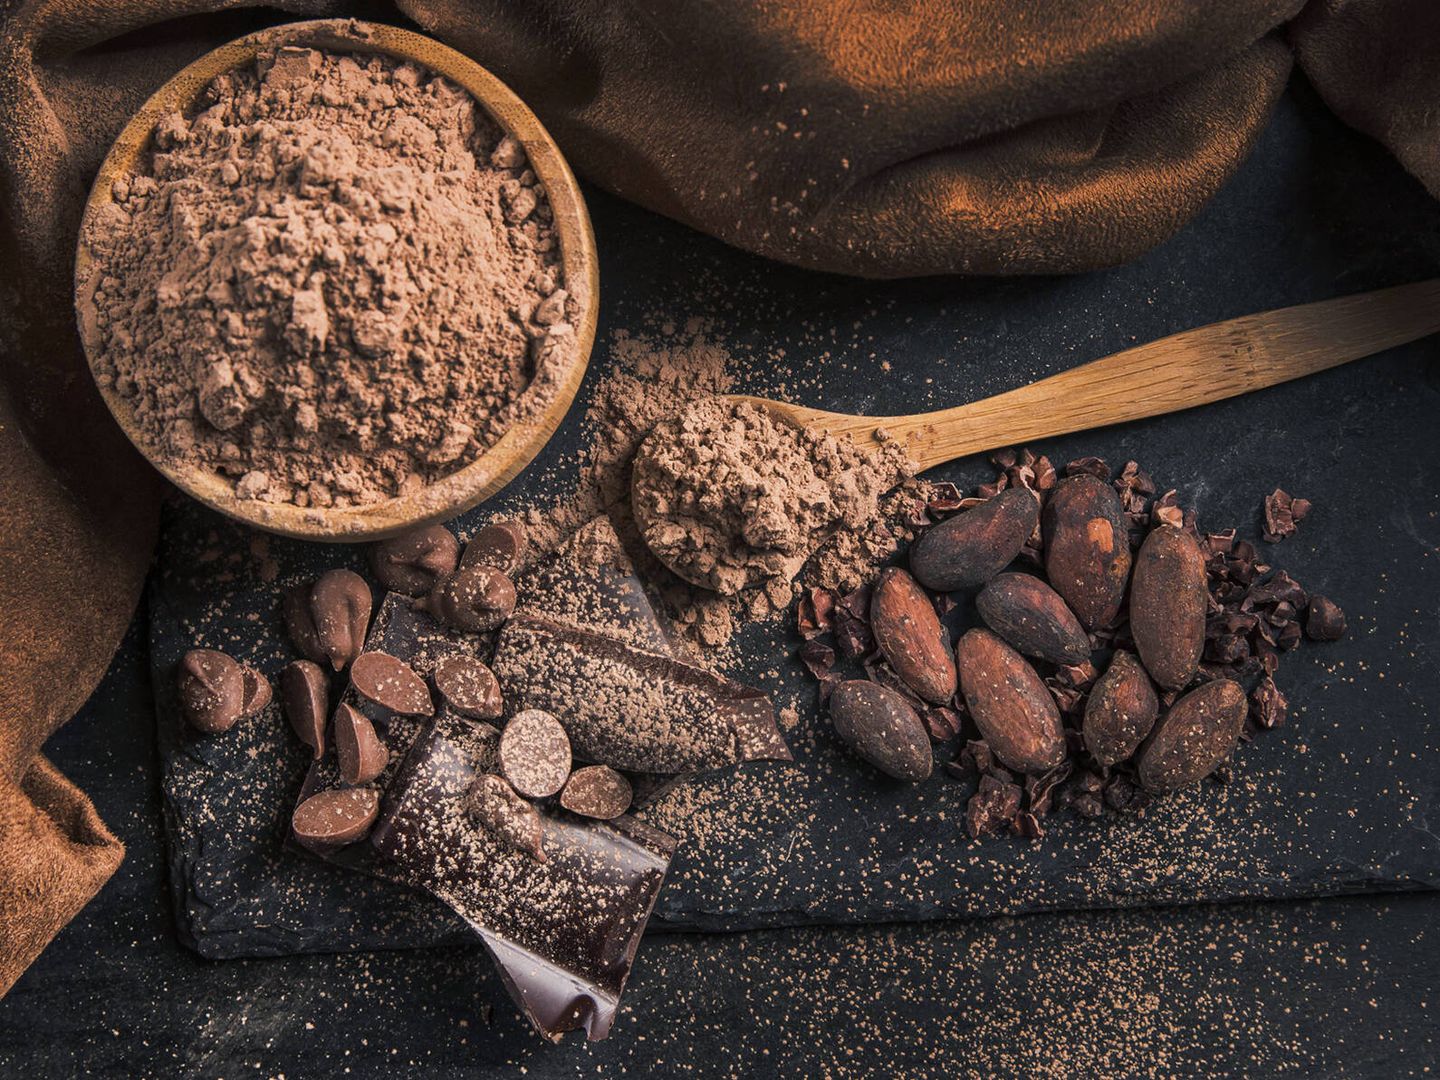 El cacao ha supuesto una gran aportación a la gastronomía mundial. (Freepik)